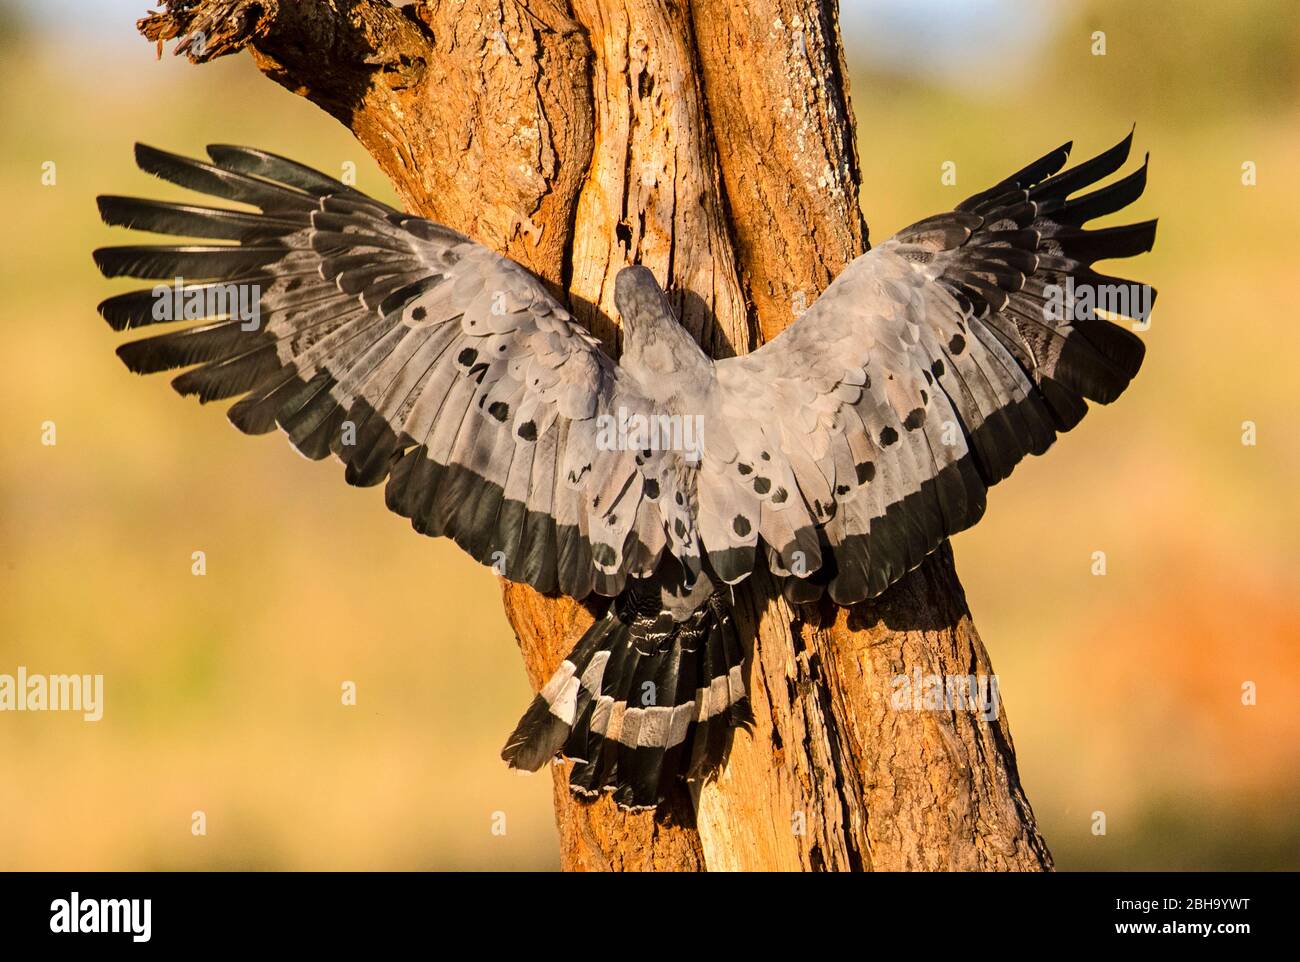 Vista posterior del arrier-hawk africano (Polyboroides typus) sobre el árbol, Parque Nacional Tarangire, Tanzania, África Foto de stock